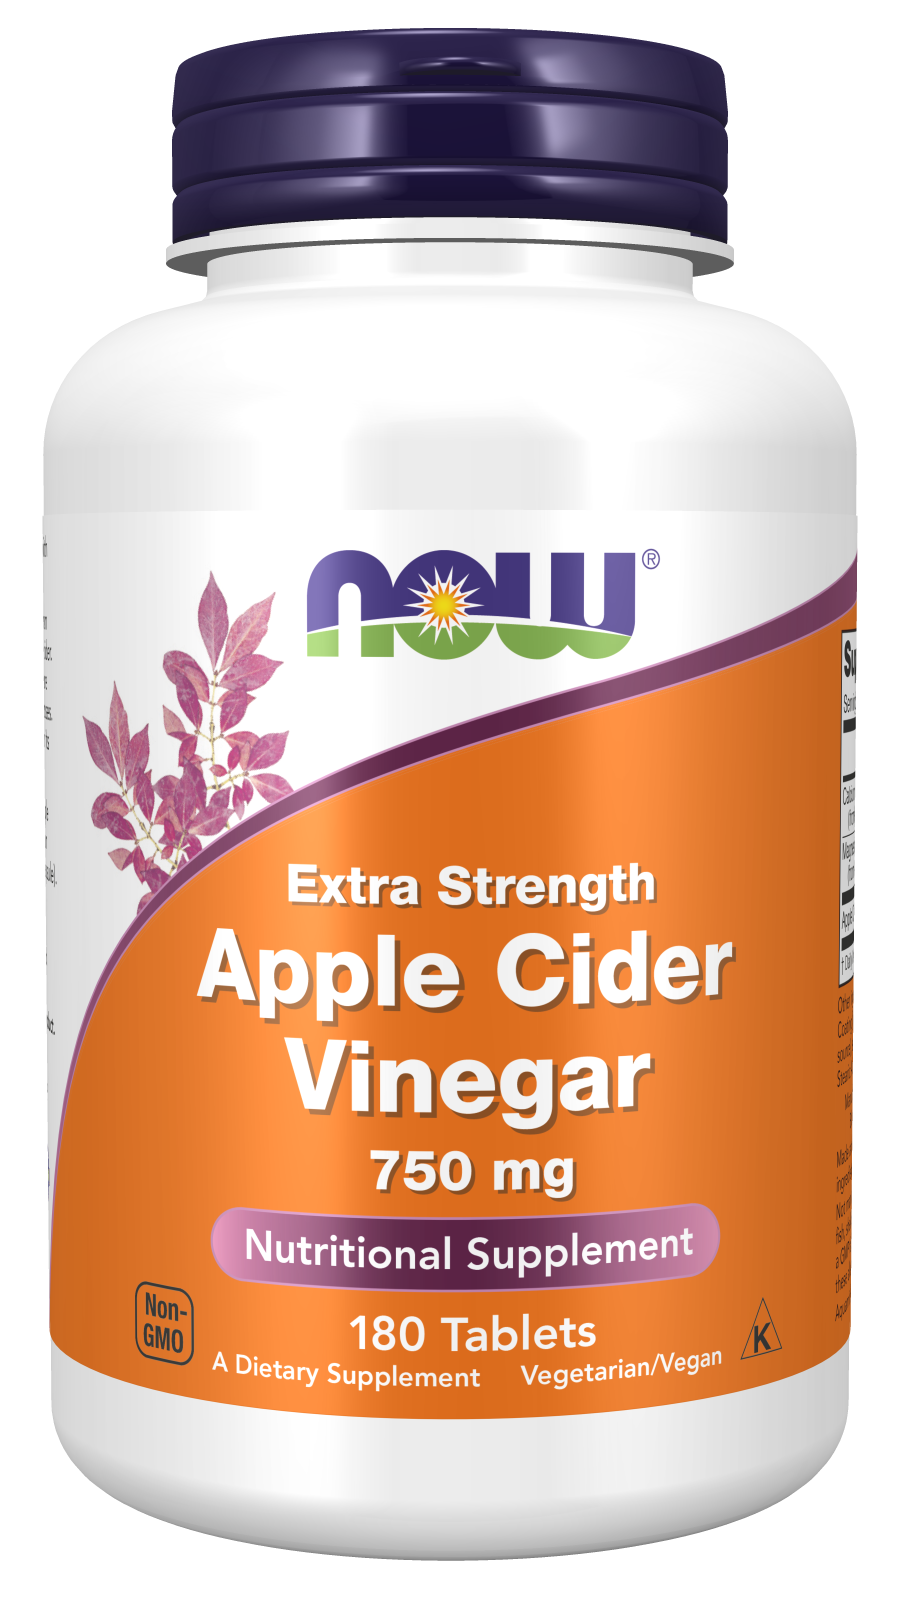 Apple Cider Vinegar, Extra Strength 750 mg - 180 Tablets Bottle Front